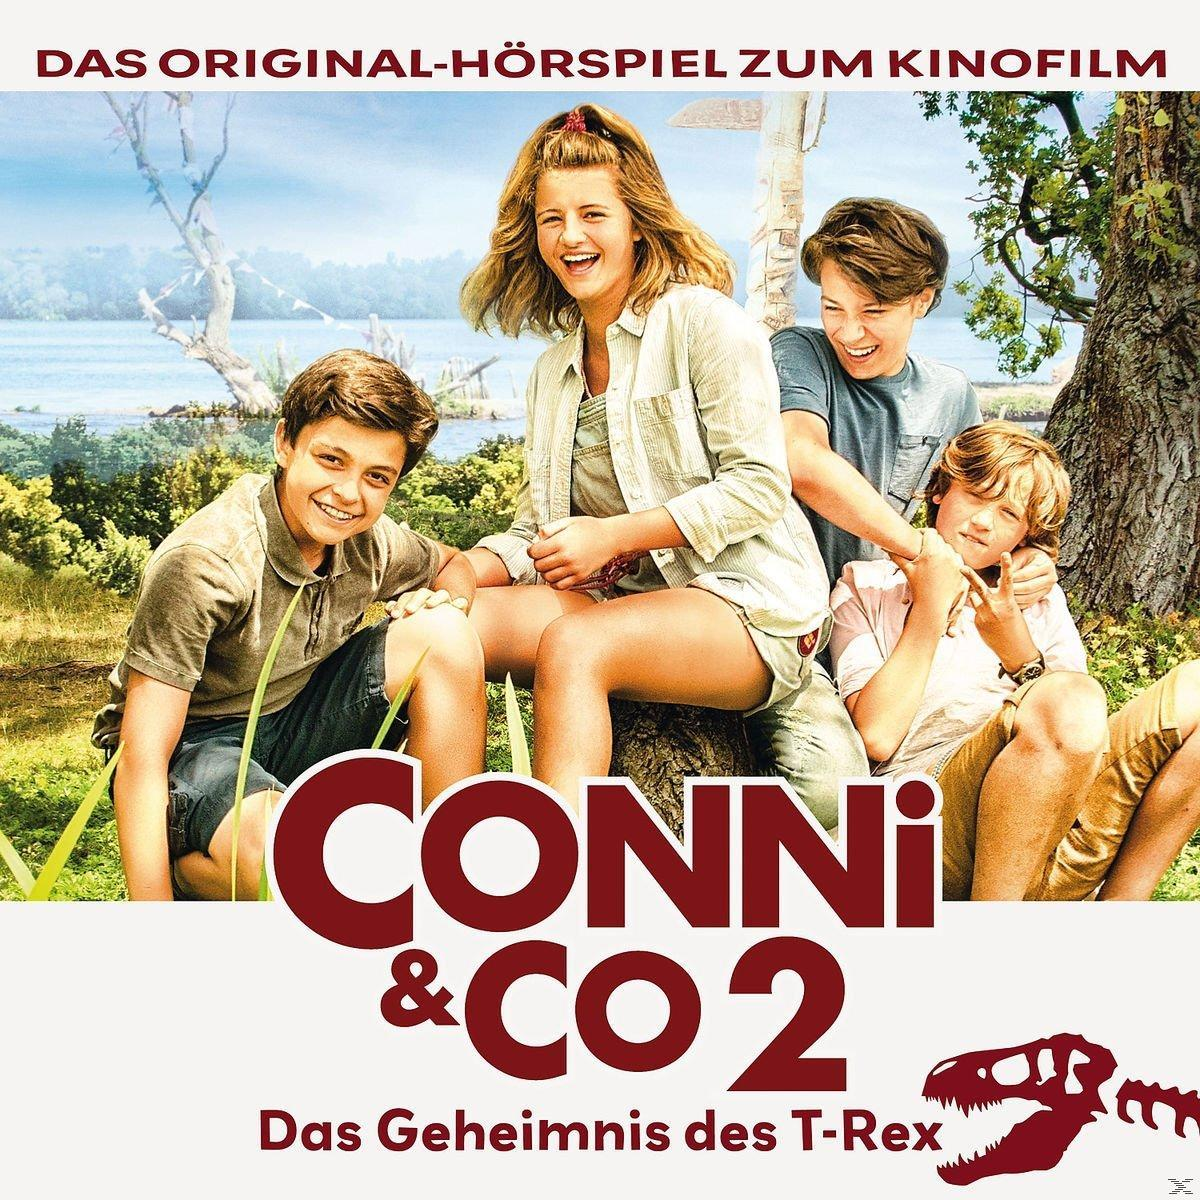 2 - (CD) Conni & Conni - Co